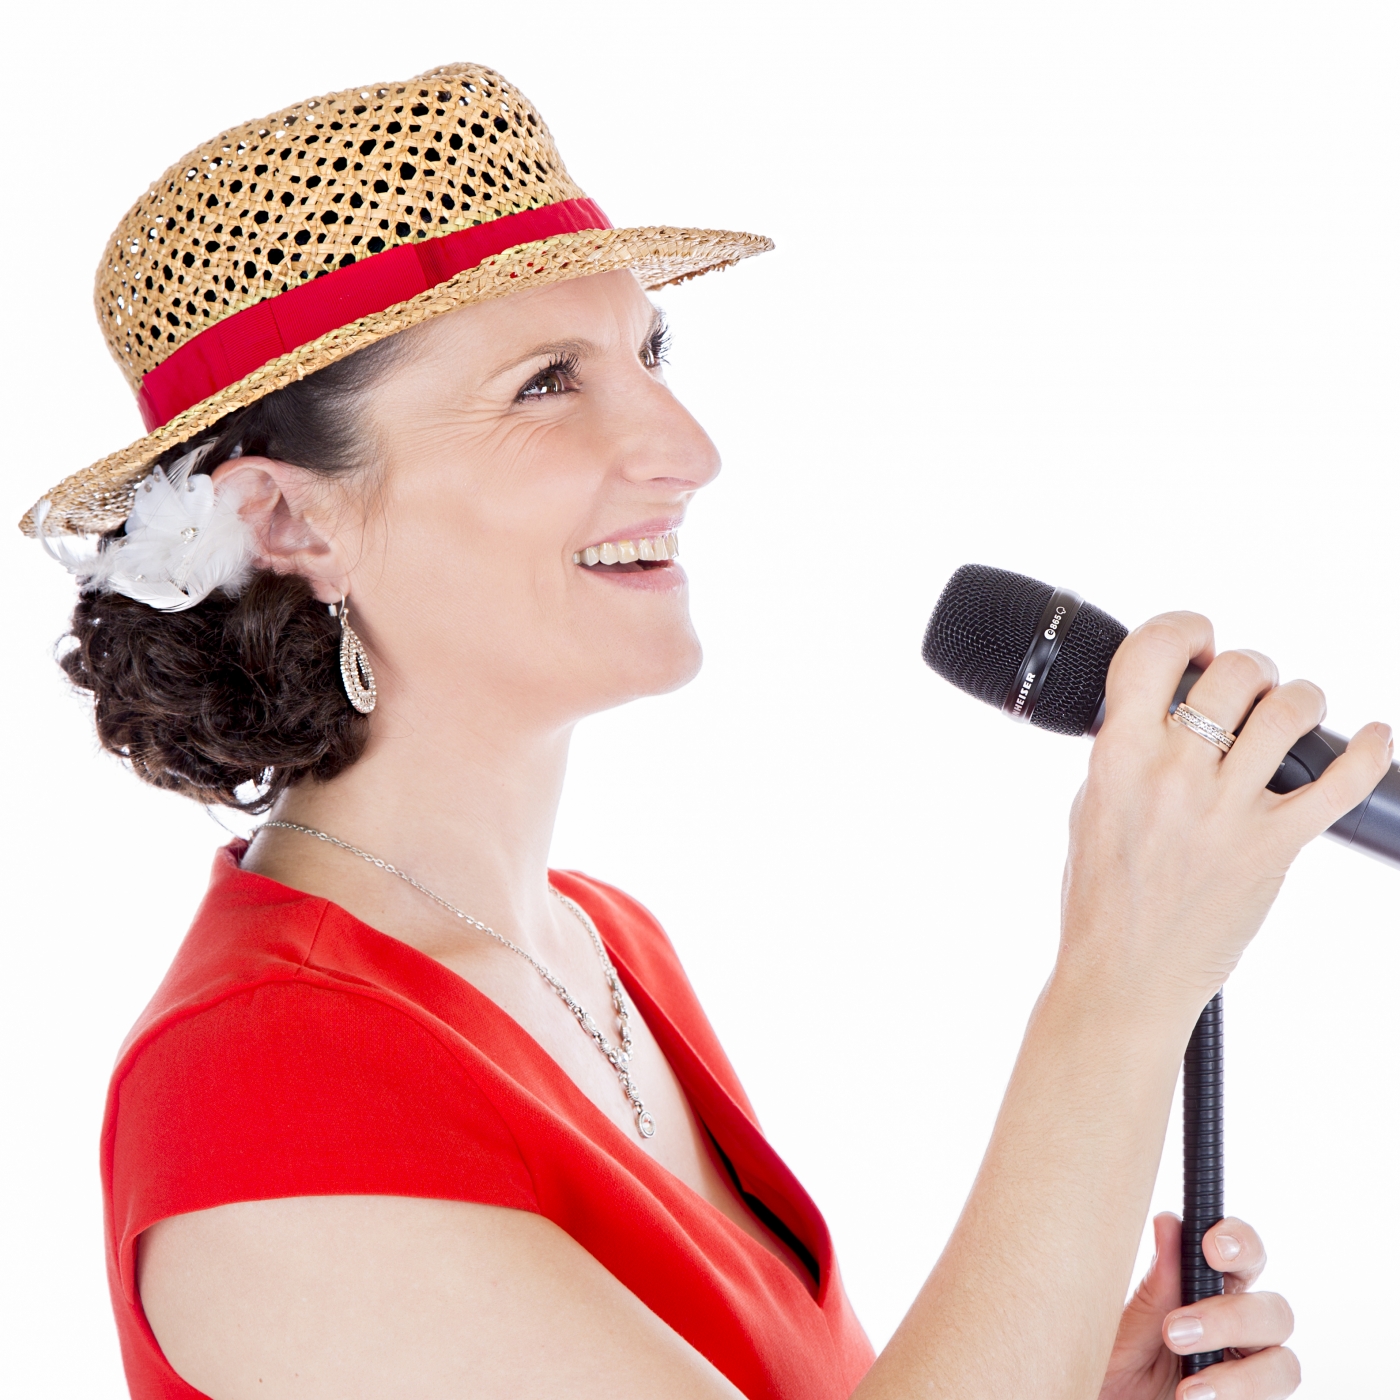 Sängerin auf einer Hochzeit mit Mikrofon in der Hand singt, trägt ein rotes Kleid und einen Strohhut.